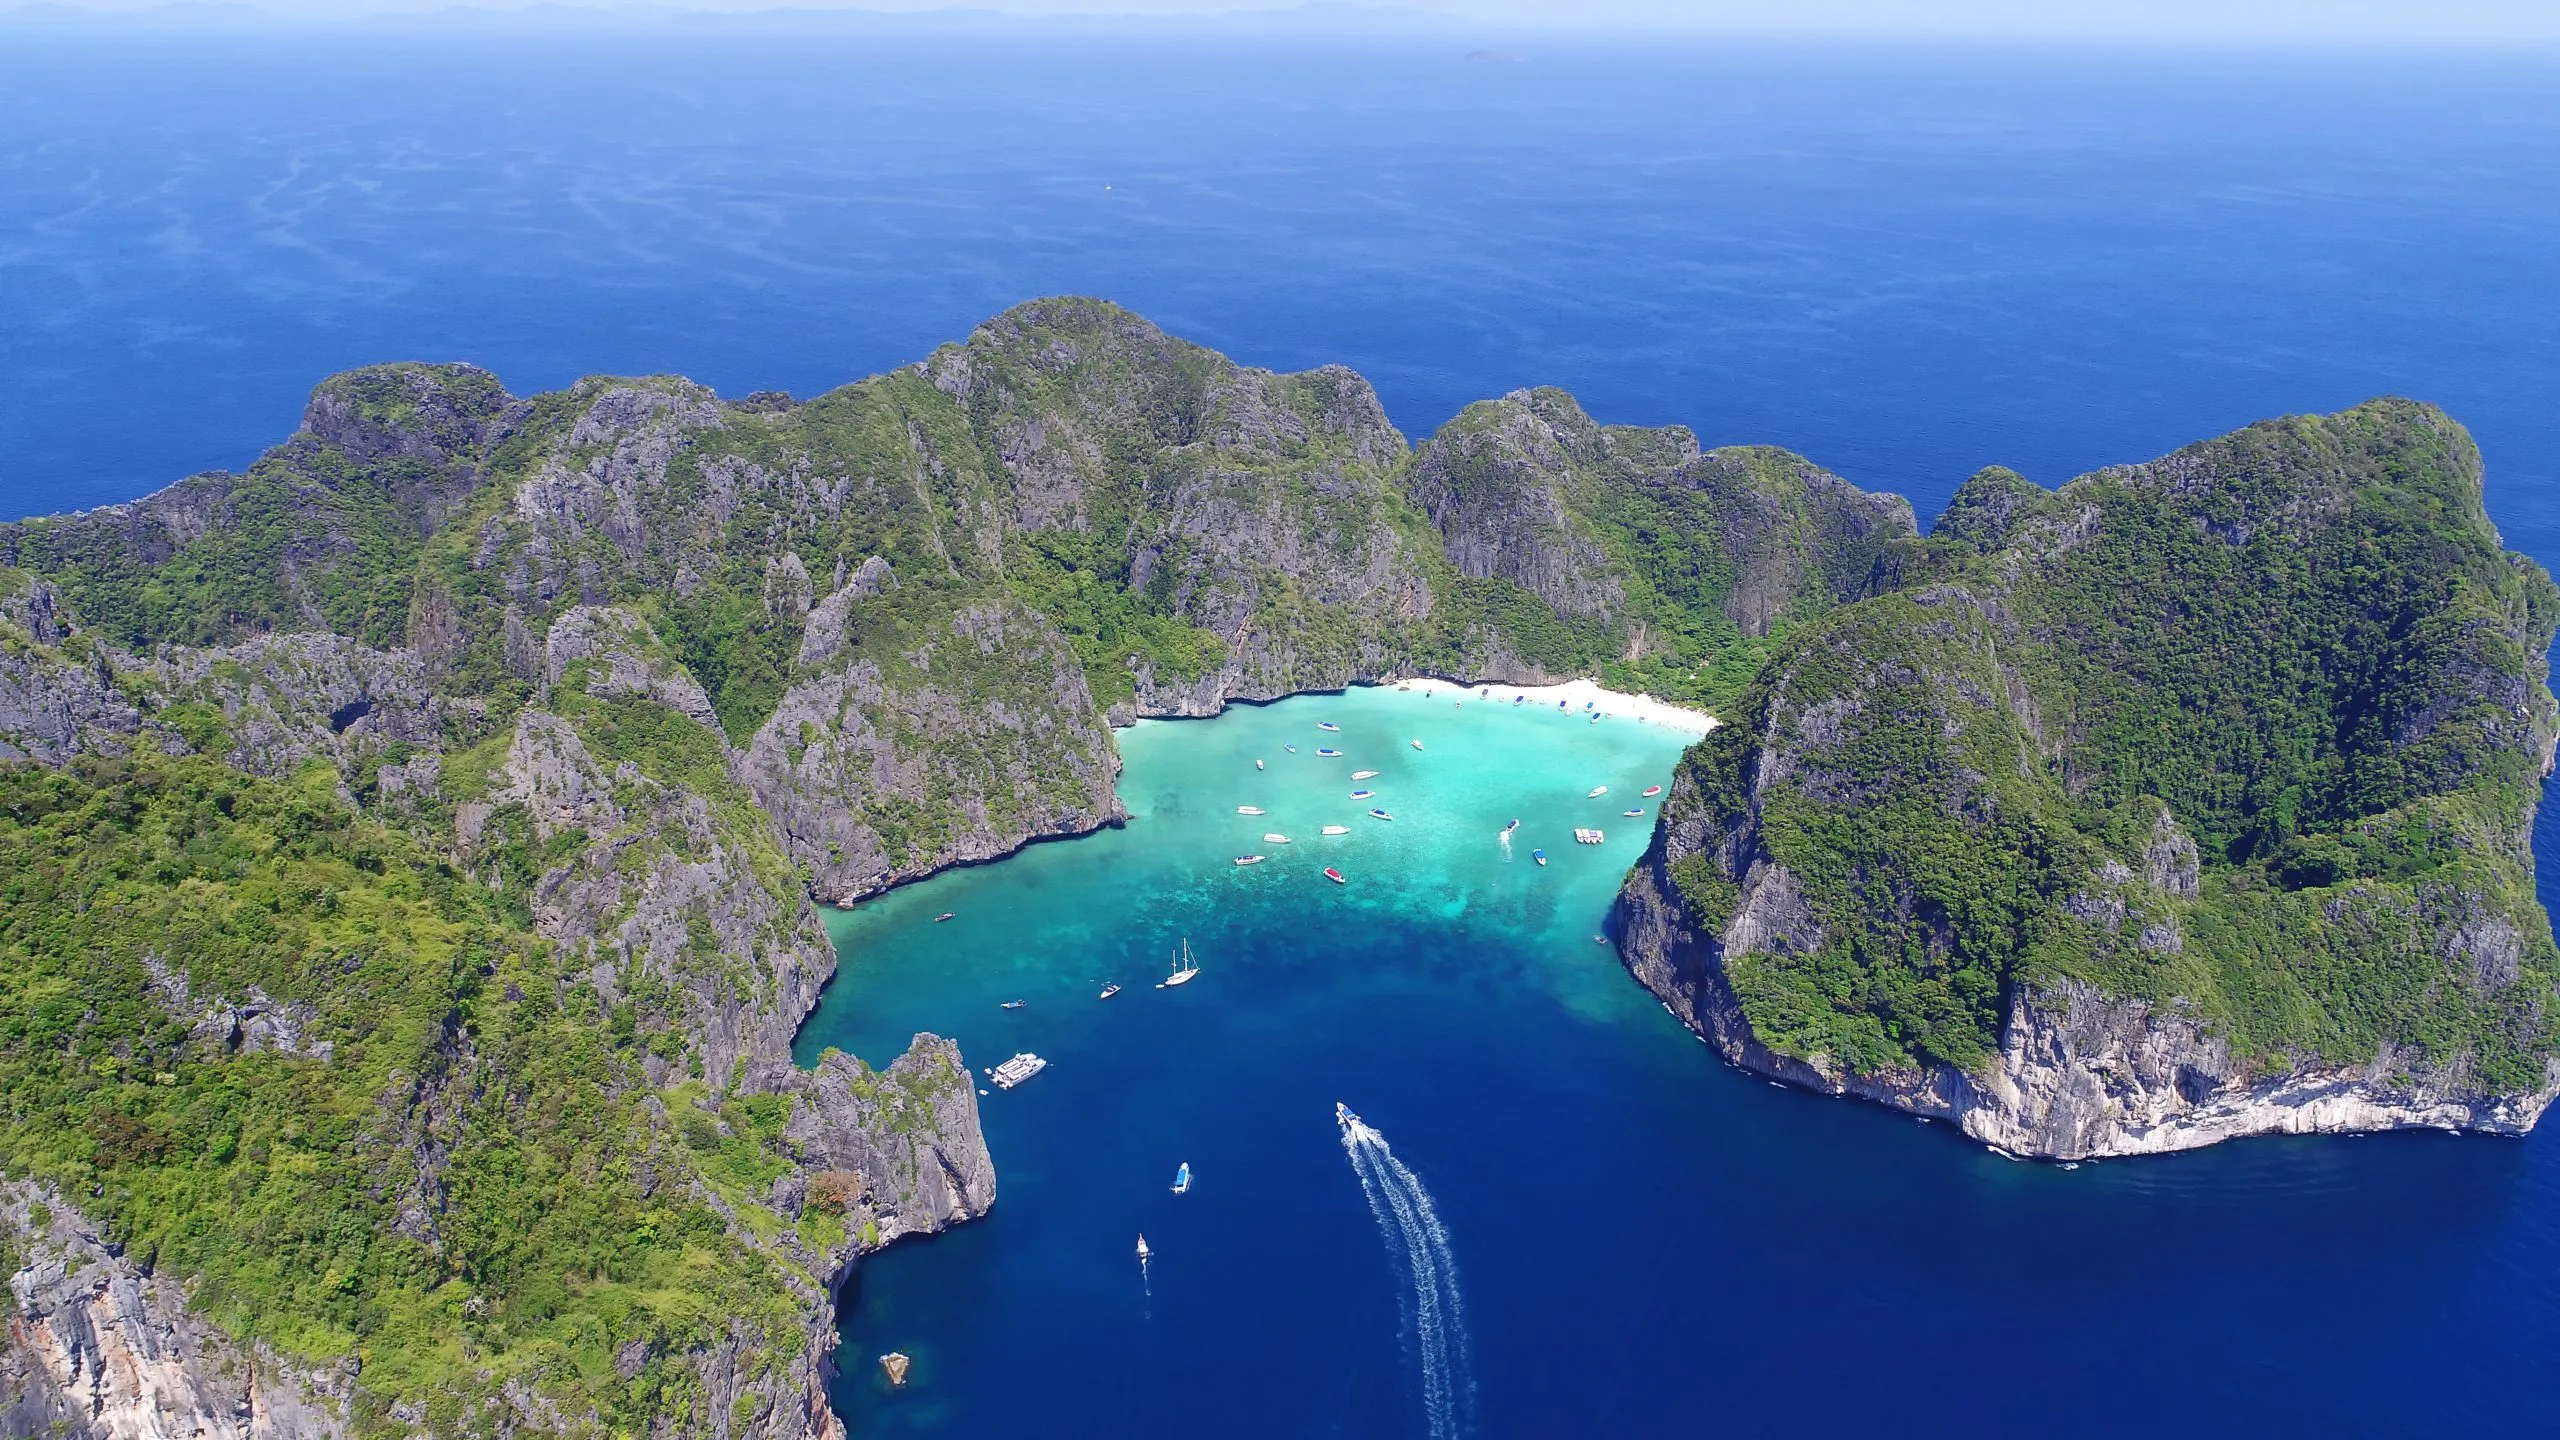 Top View Tropical Island , Aerial view of Maya bay ,Phi-Phi Islands, Krabi, Thailand.